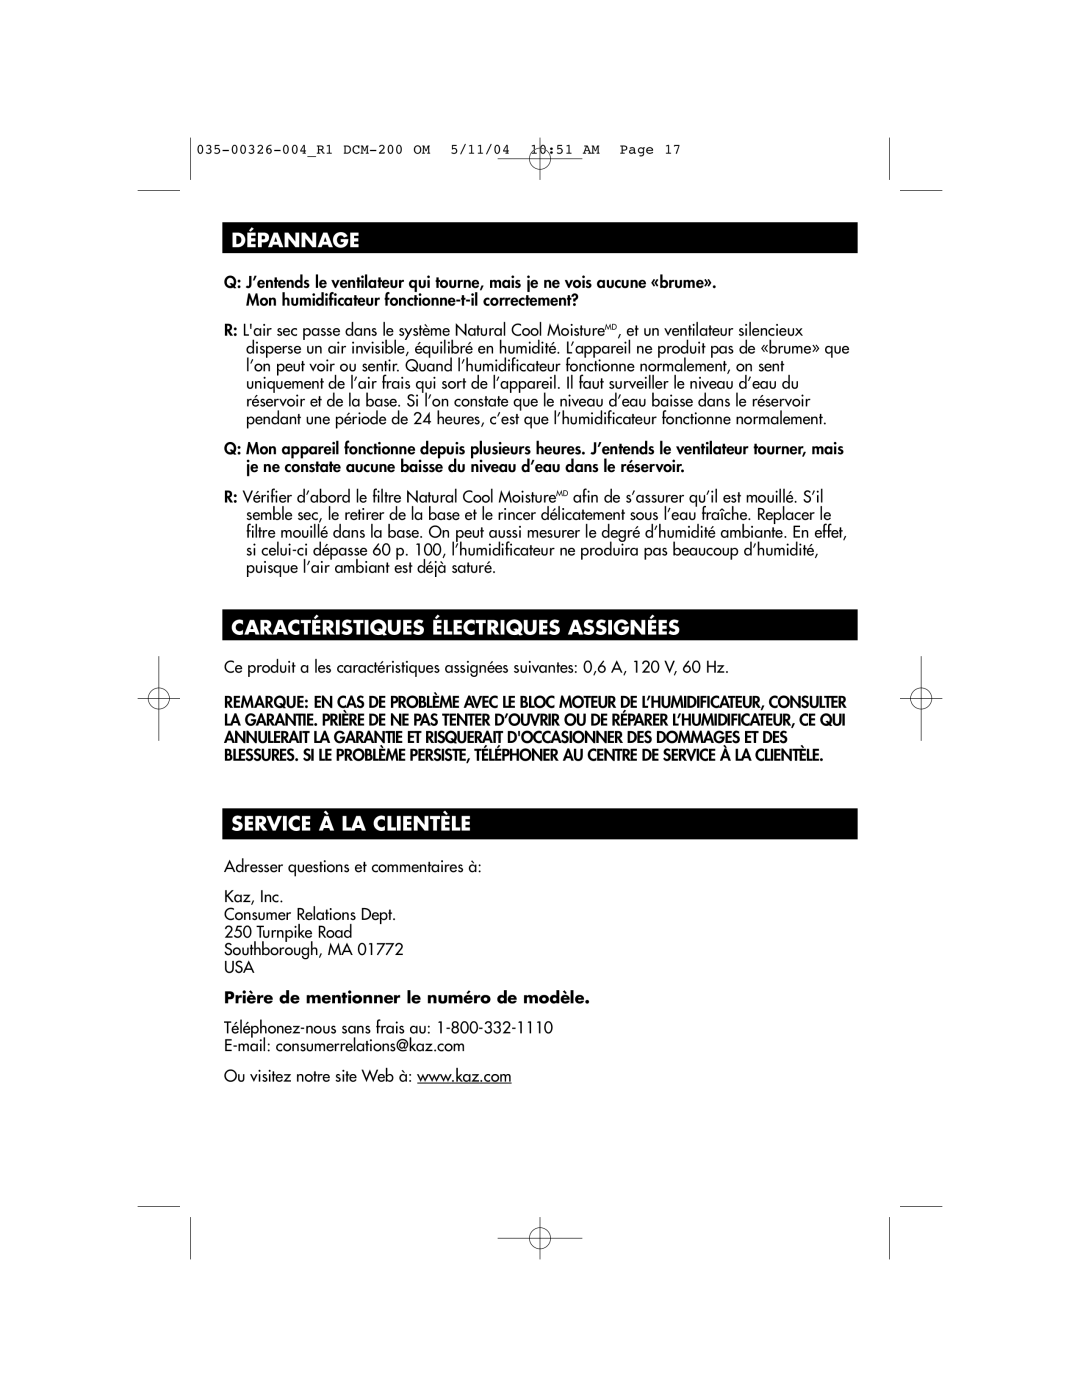 Duracraft DCM-200 owner manual Dépannage, Caractéristiques Électriques Assignées, Service À LA Clientèle 